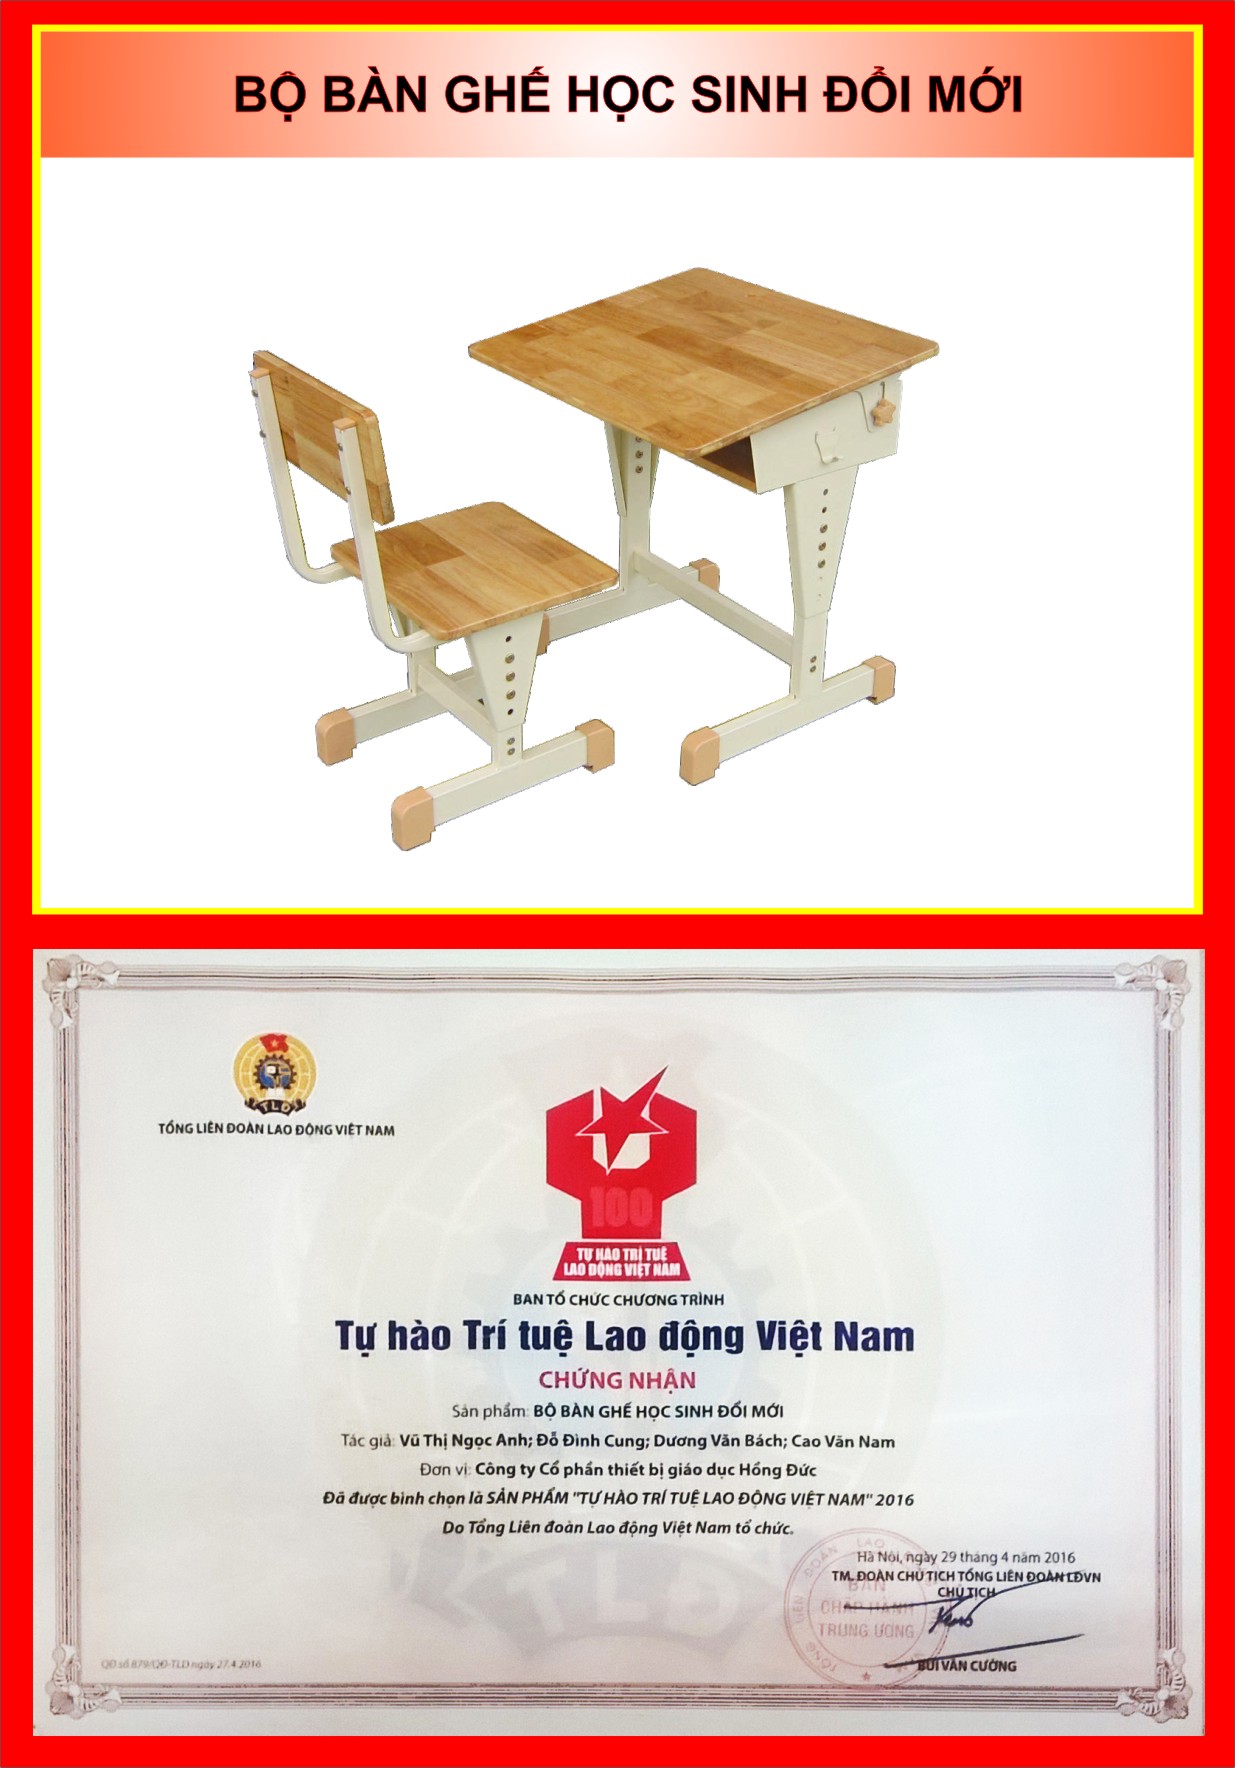 Bàn ghế học sinh đổi mới Hồng Đức đạt giải thưởng:  top 100 sản phẩm “Tự hào trí tuệ Lao động Việt Nam năm 2016”